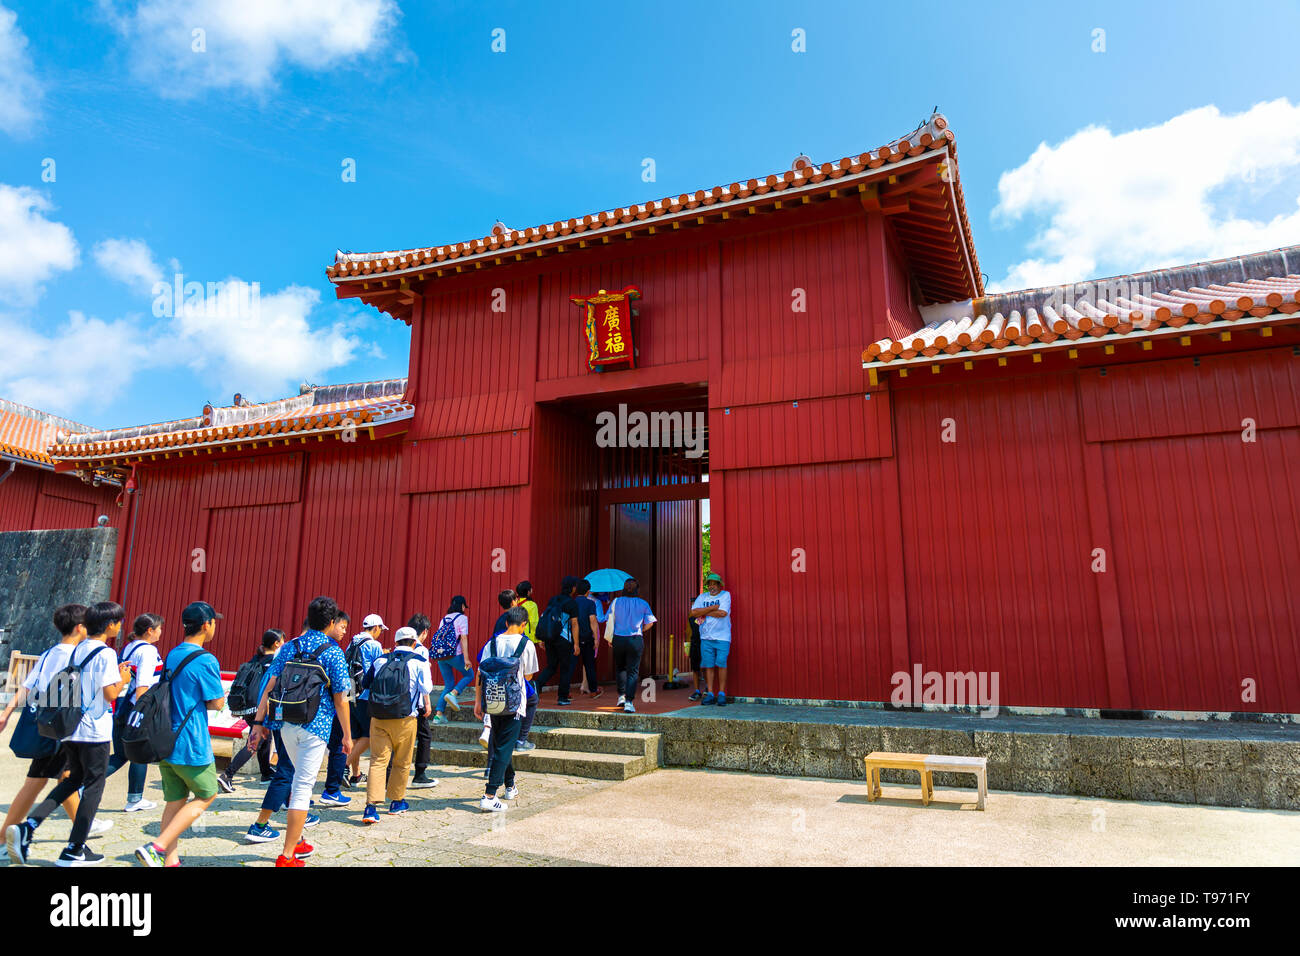 Shureimon Gate en el castillo de Shuri en Okinawa, Japón. La tablilla de madera que adorna la puerta dispone de caracteres chinos que significa tierra de corrección Foto de stock